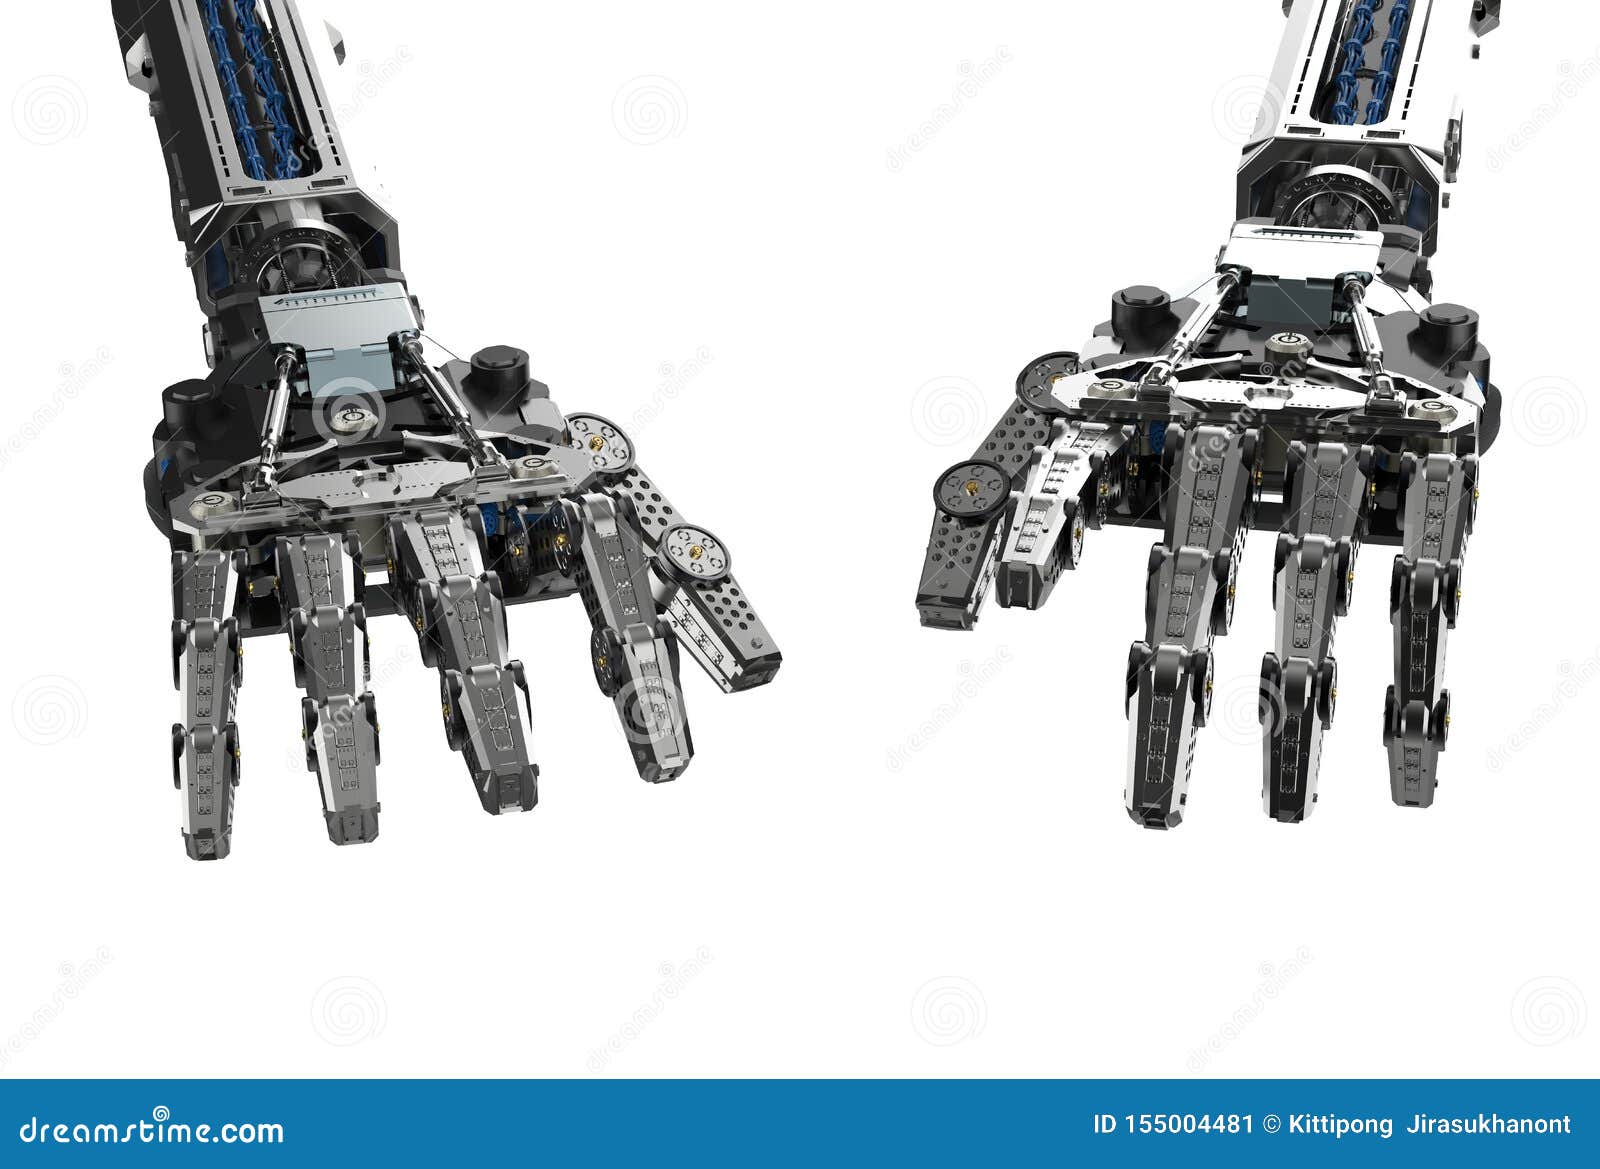 靠机械装置维持生命的人手键入的姿态库存例证 插画包括有自动地 技术 计算机控制学 备件 金属